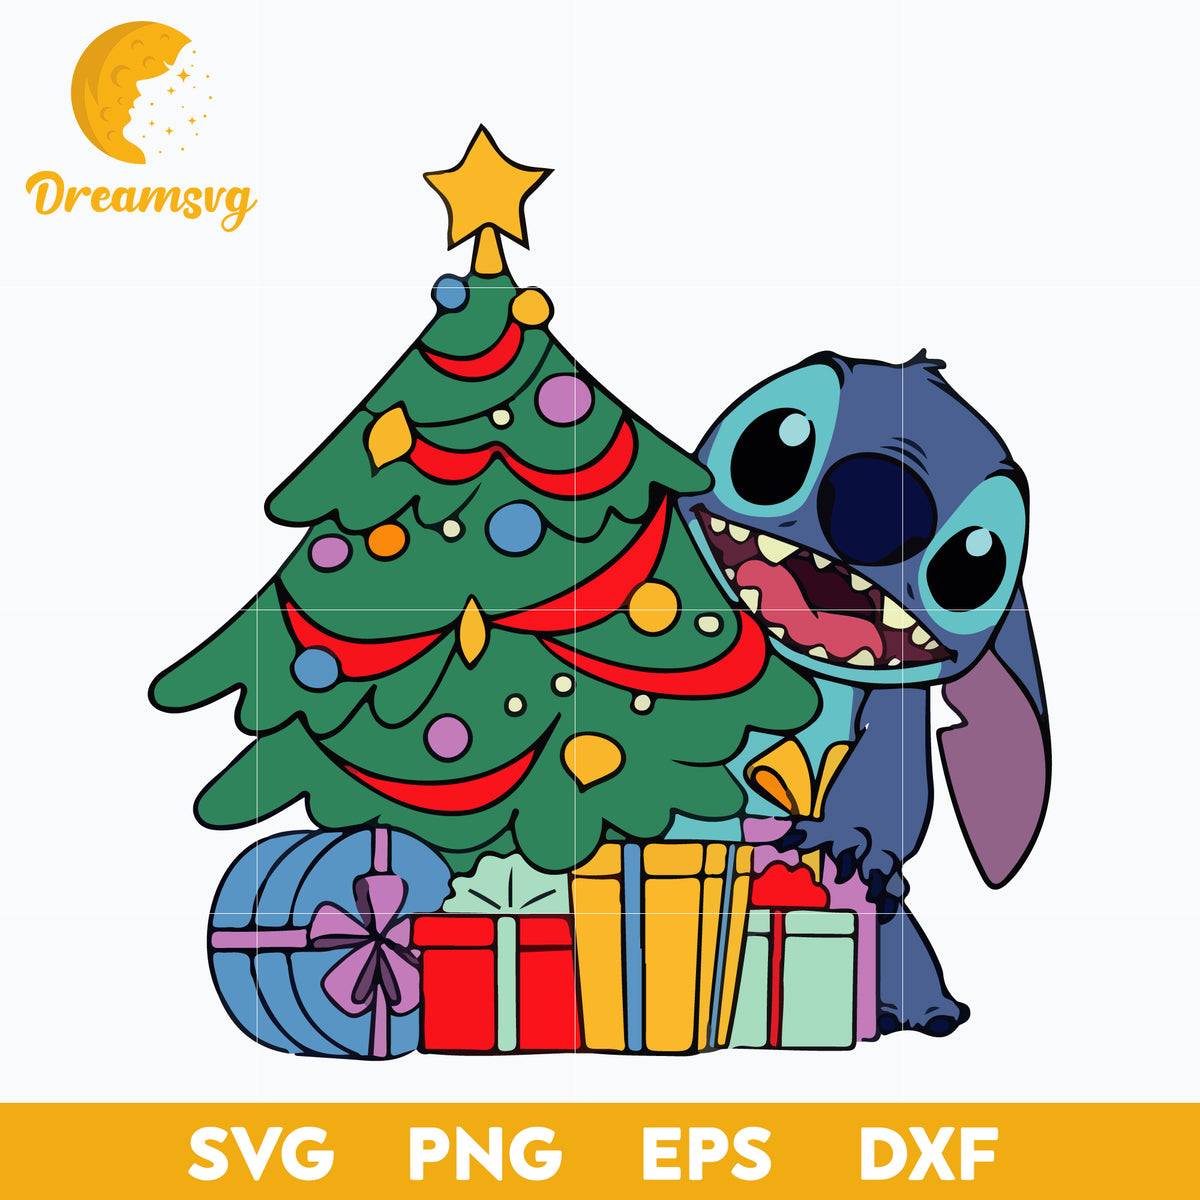 Stitch Christmas SVG, Lilo And Stitch SVG, Cartoon SVG, PNG, DXF, EPS